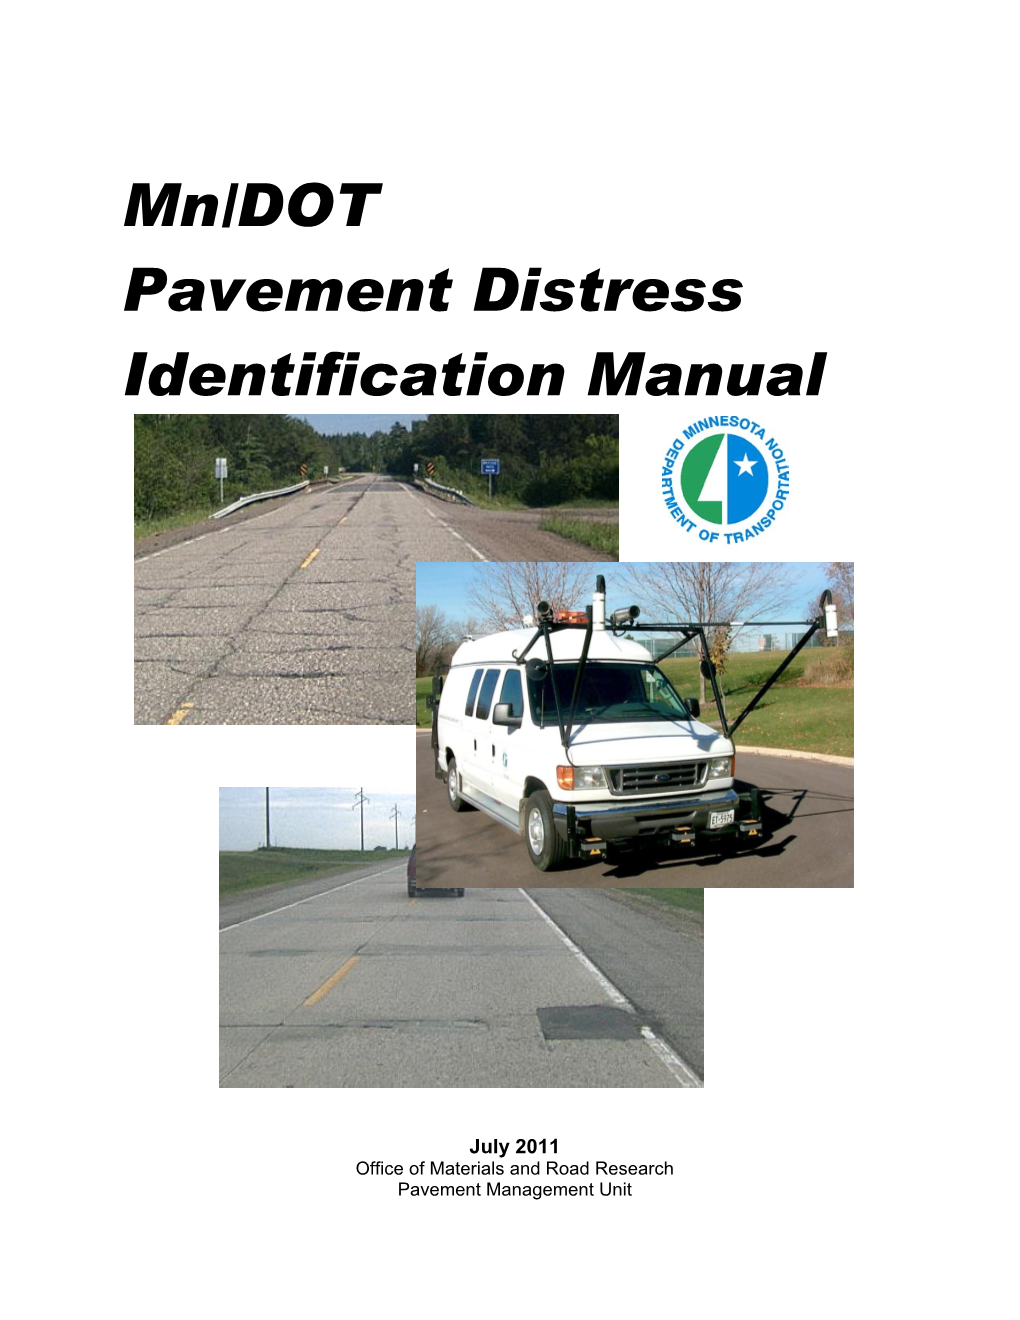 Mn/DOT Pavement Distress Identification Manual